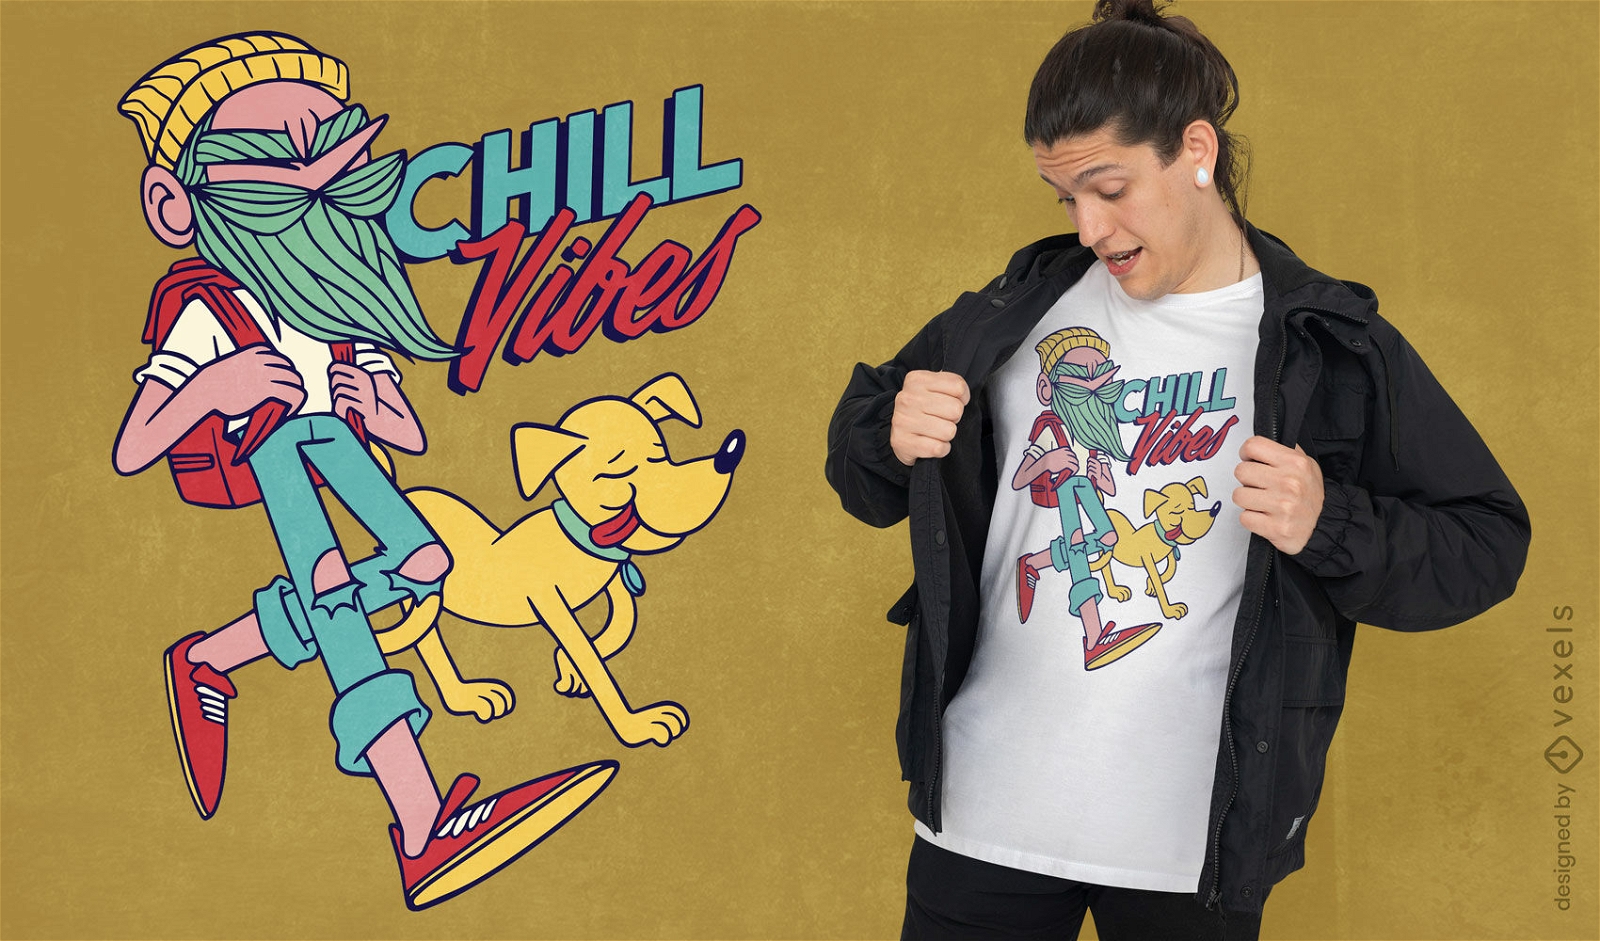 Chill hipster personaje y diseño de camiseta de perro